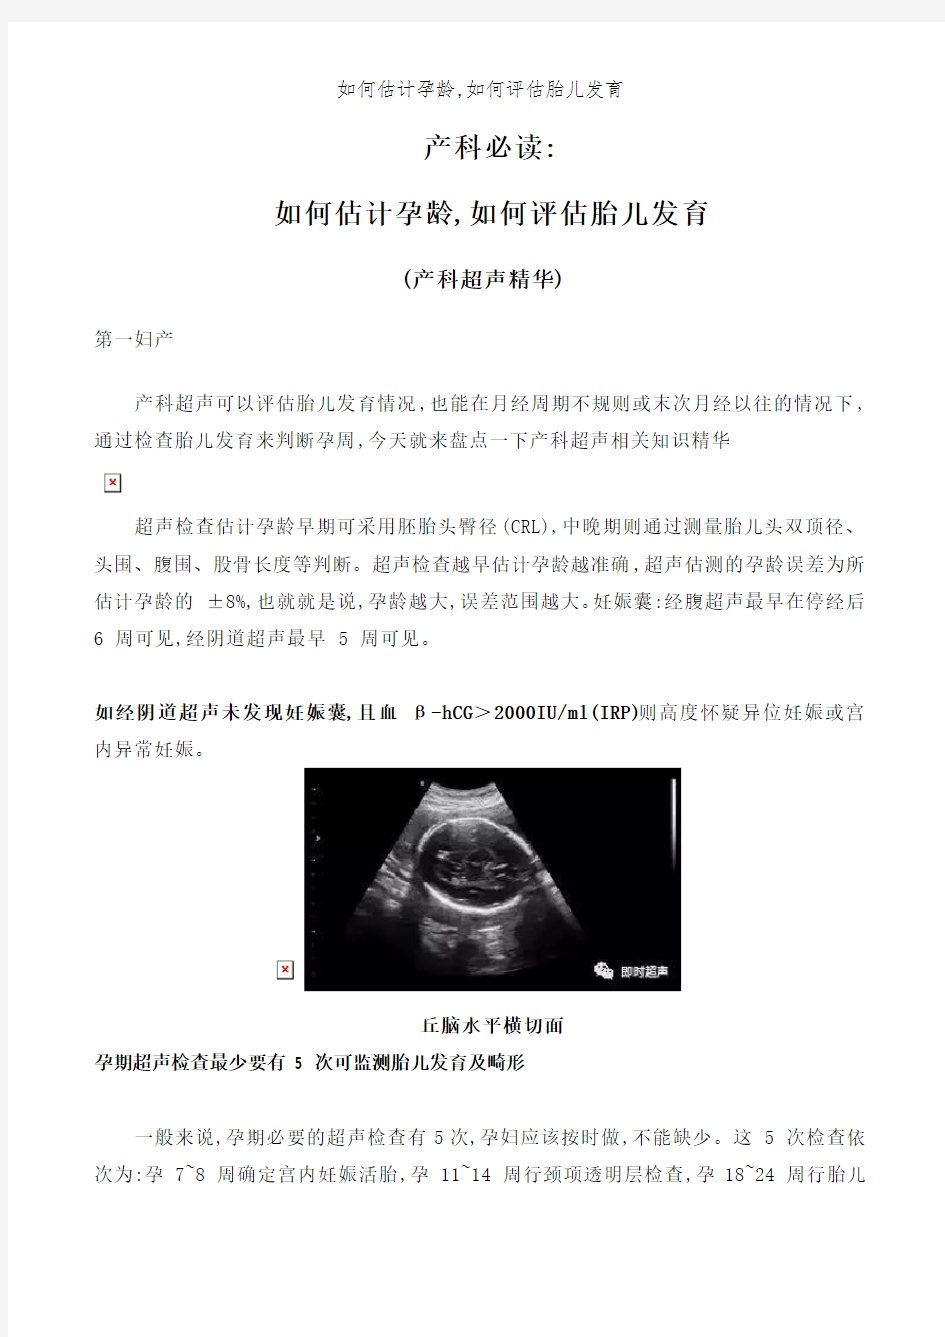 如何估计孕龄,如何评估胎儿发育